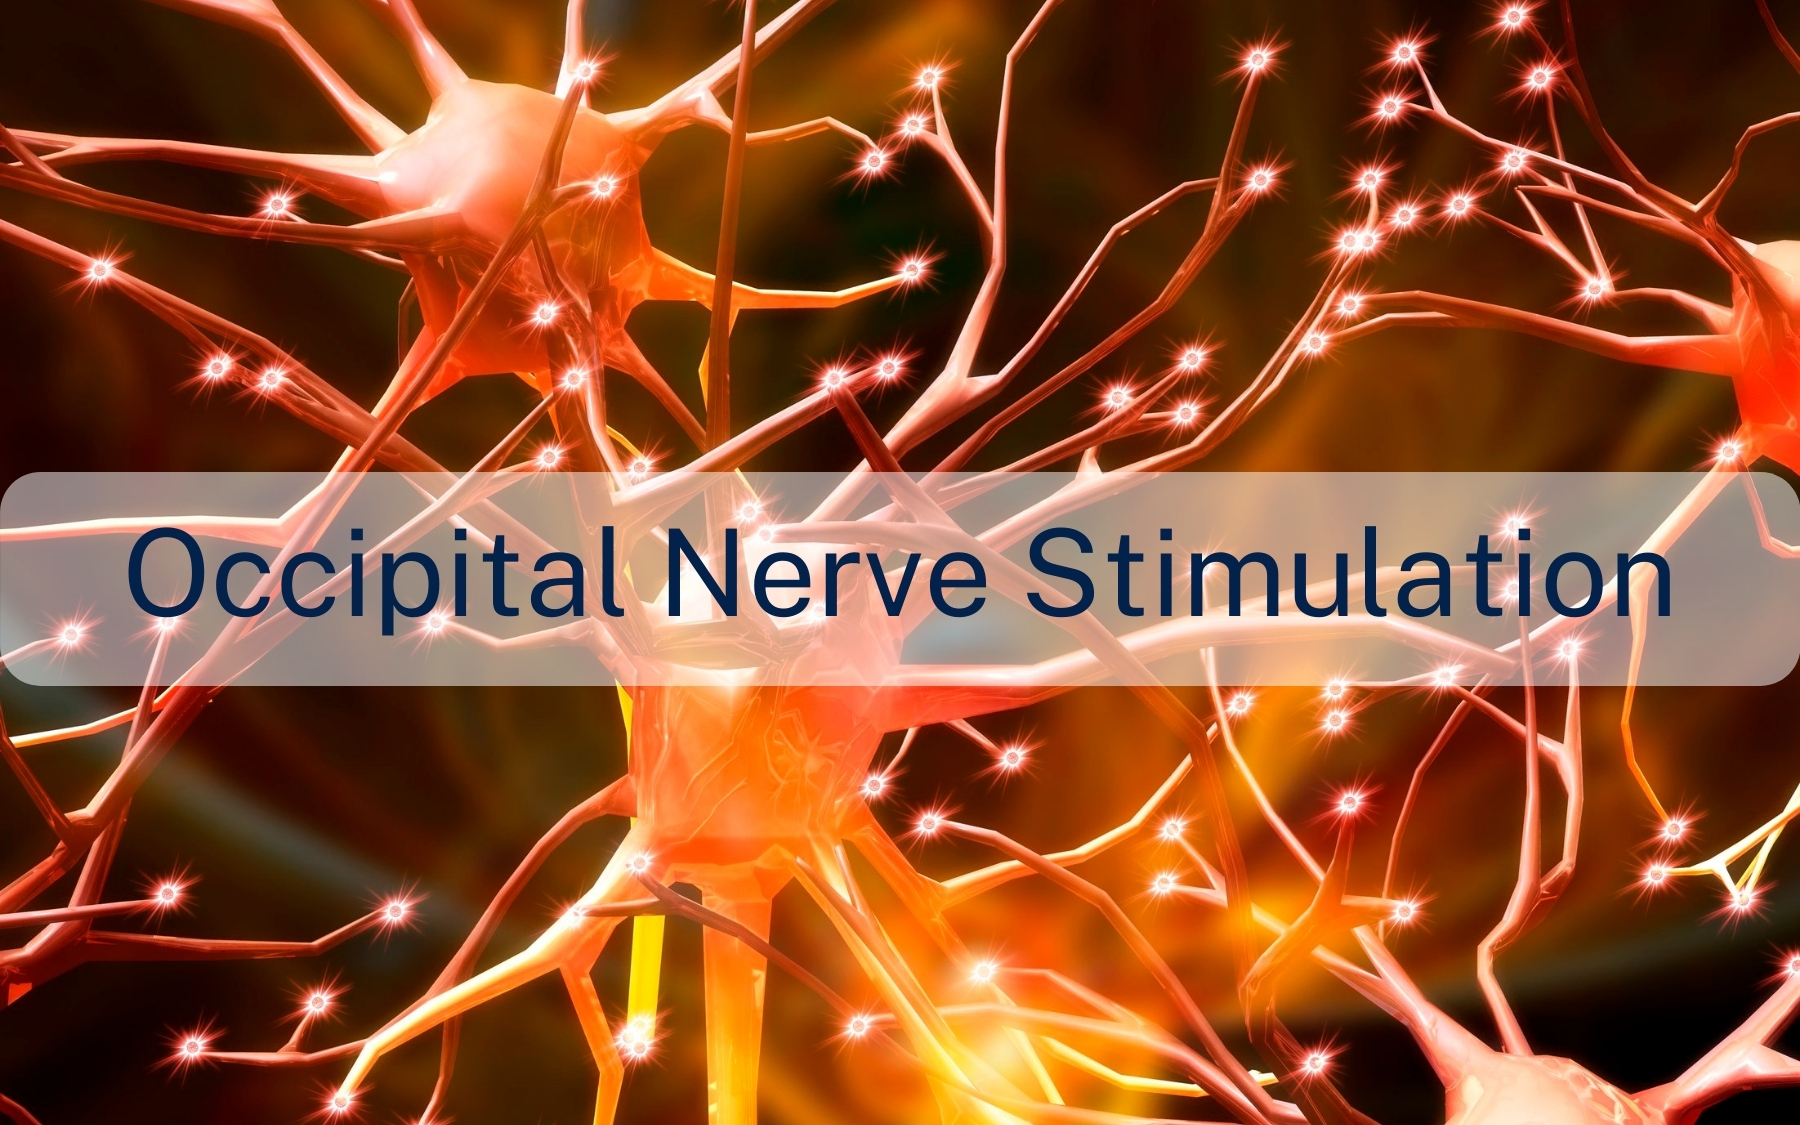 Occipital nerve stimulation